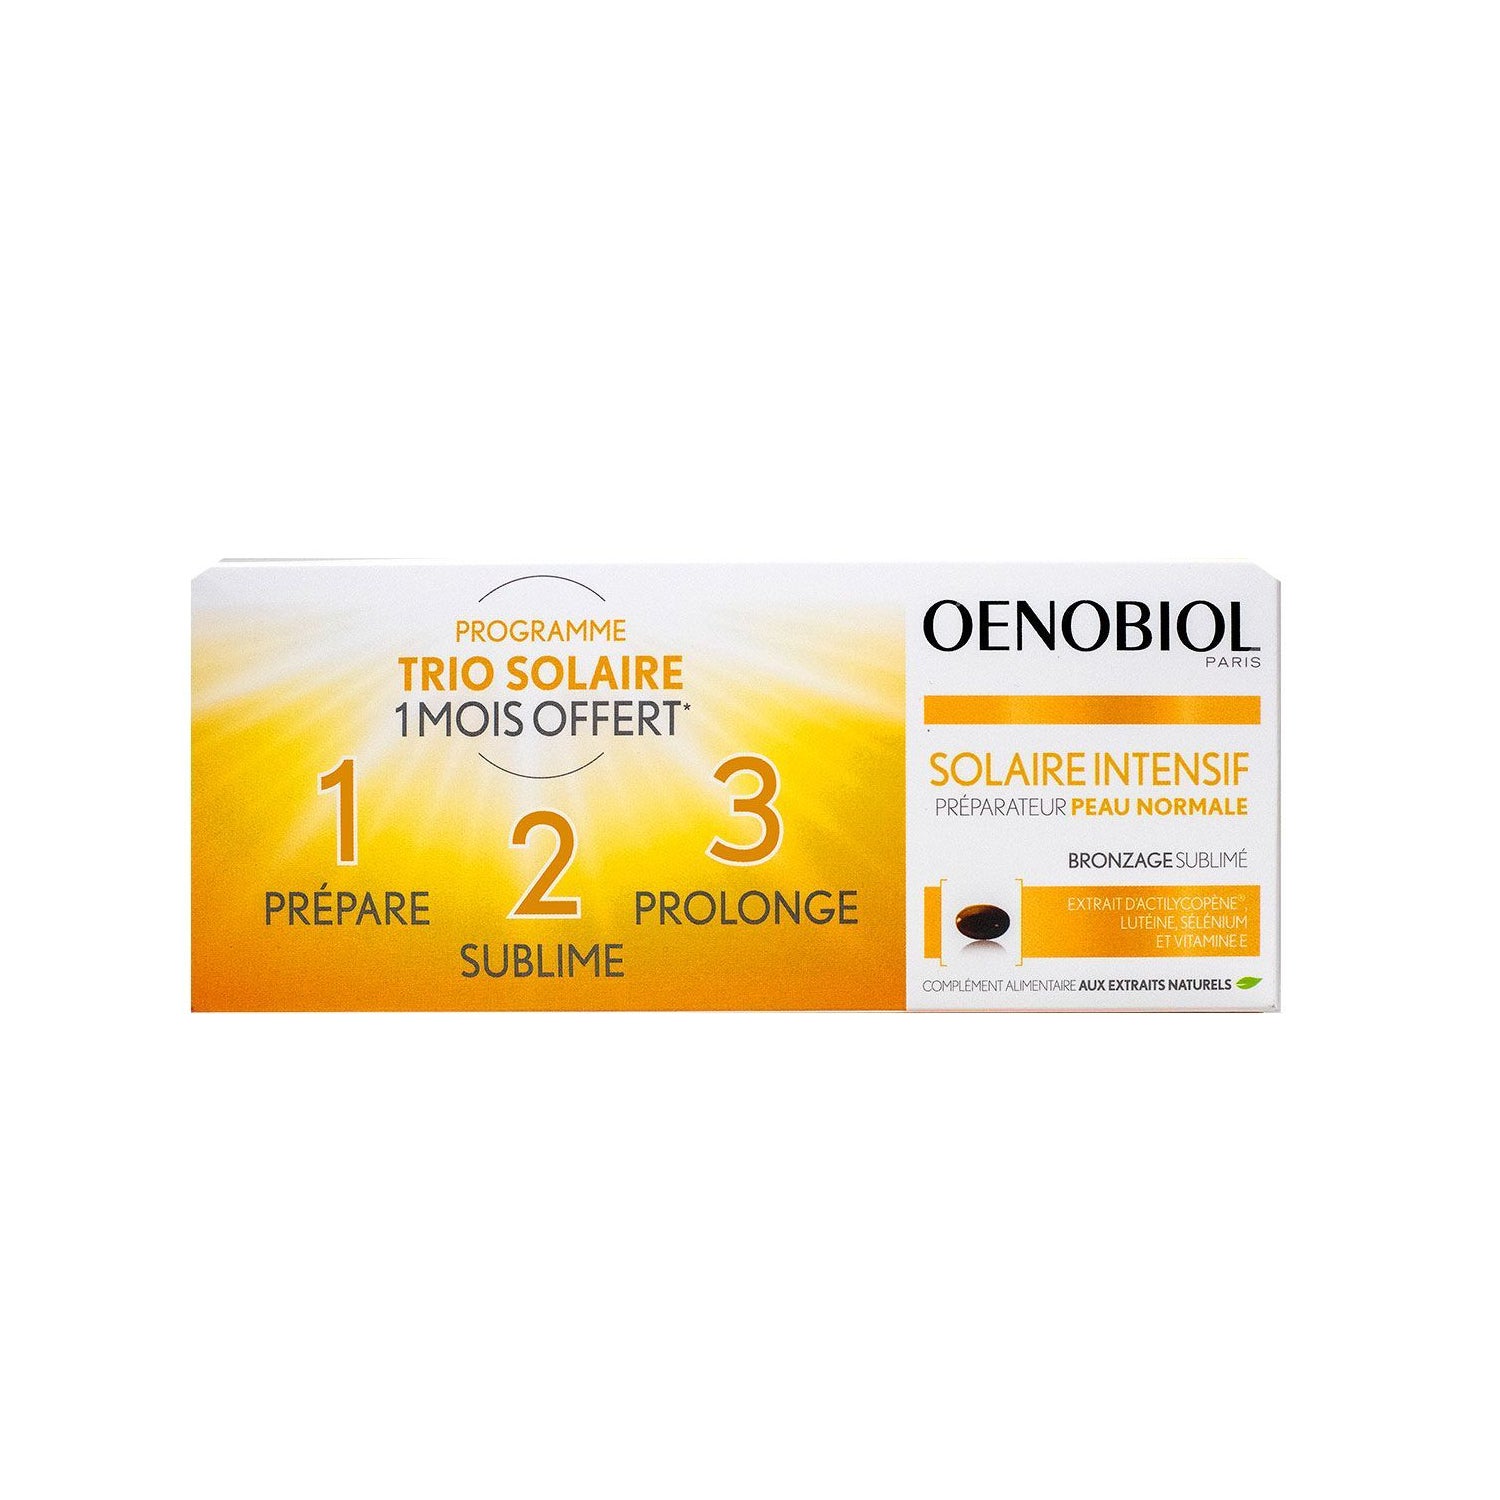 Oenobiol Solaire Intensif Préparateur Peau Normale 3x30 Capsules